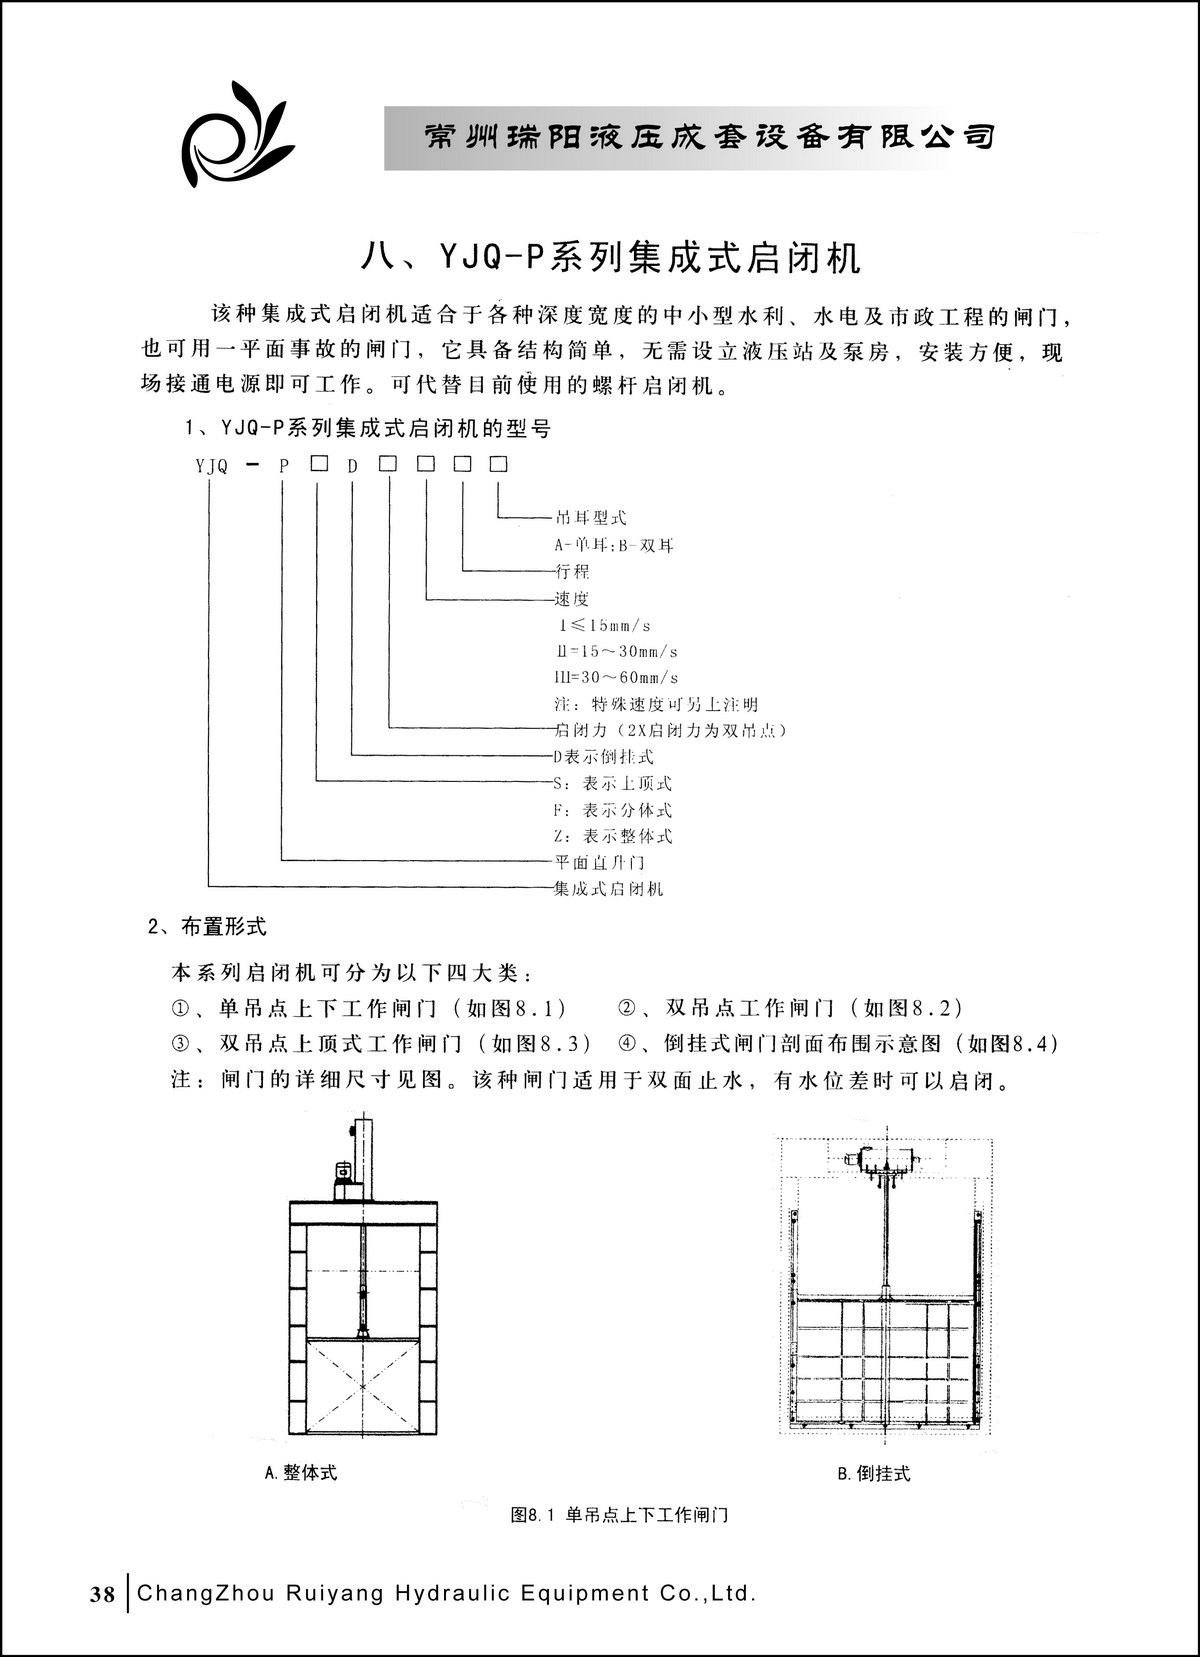 常州瑞阳液压成套设备有限公司产品样本2_页面_38.JPG